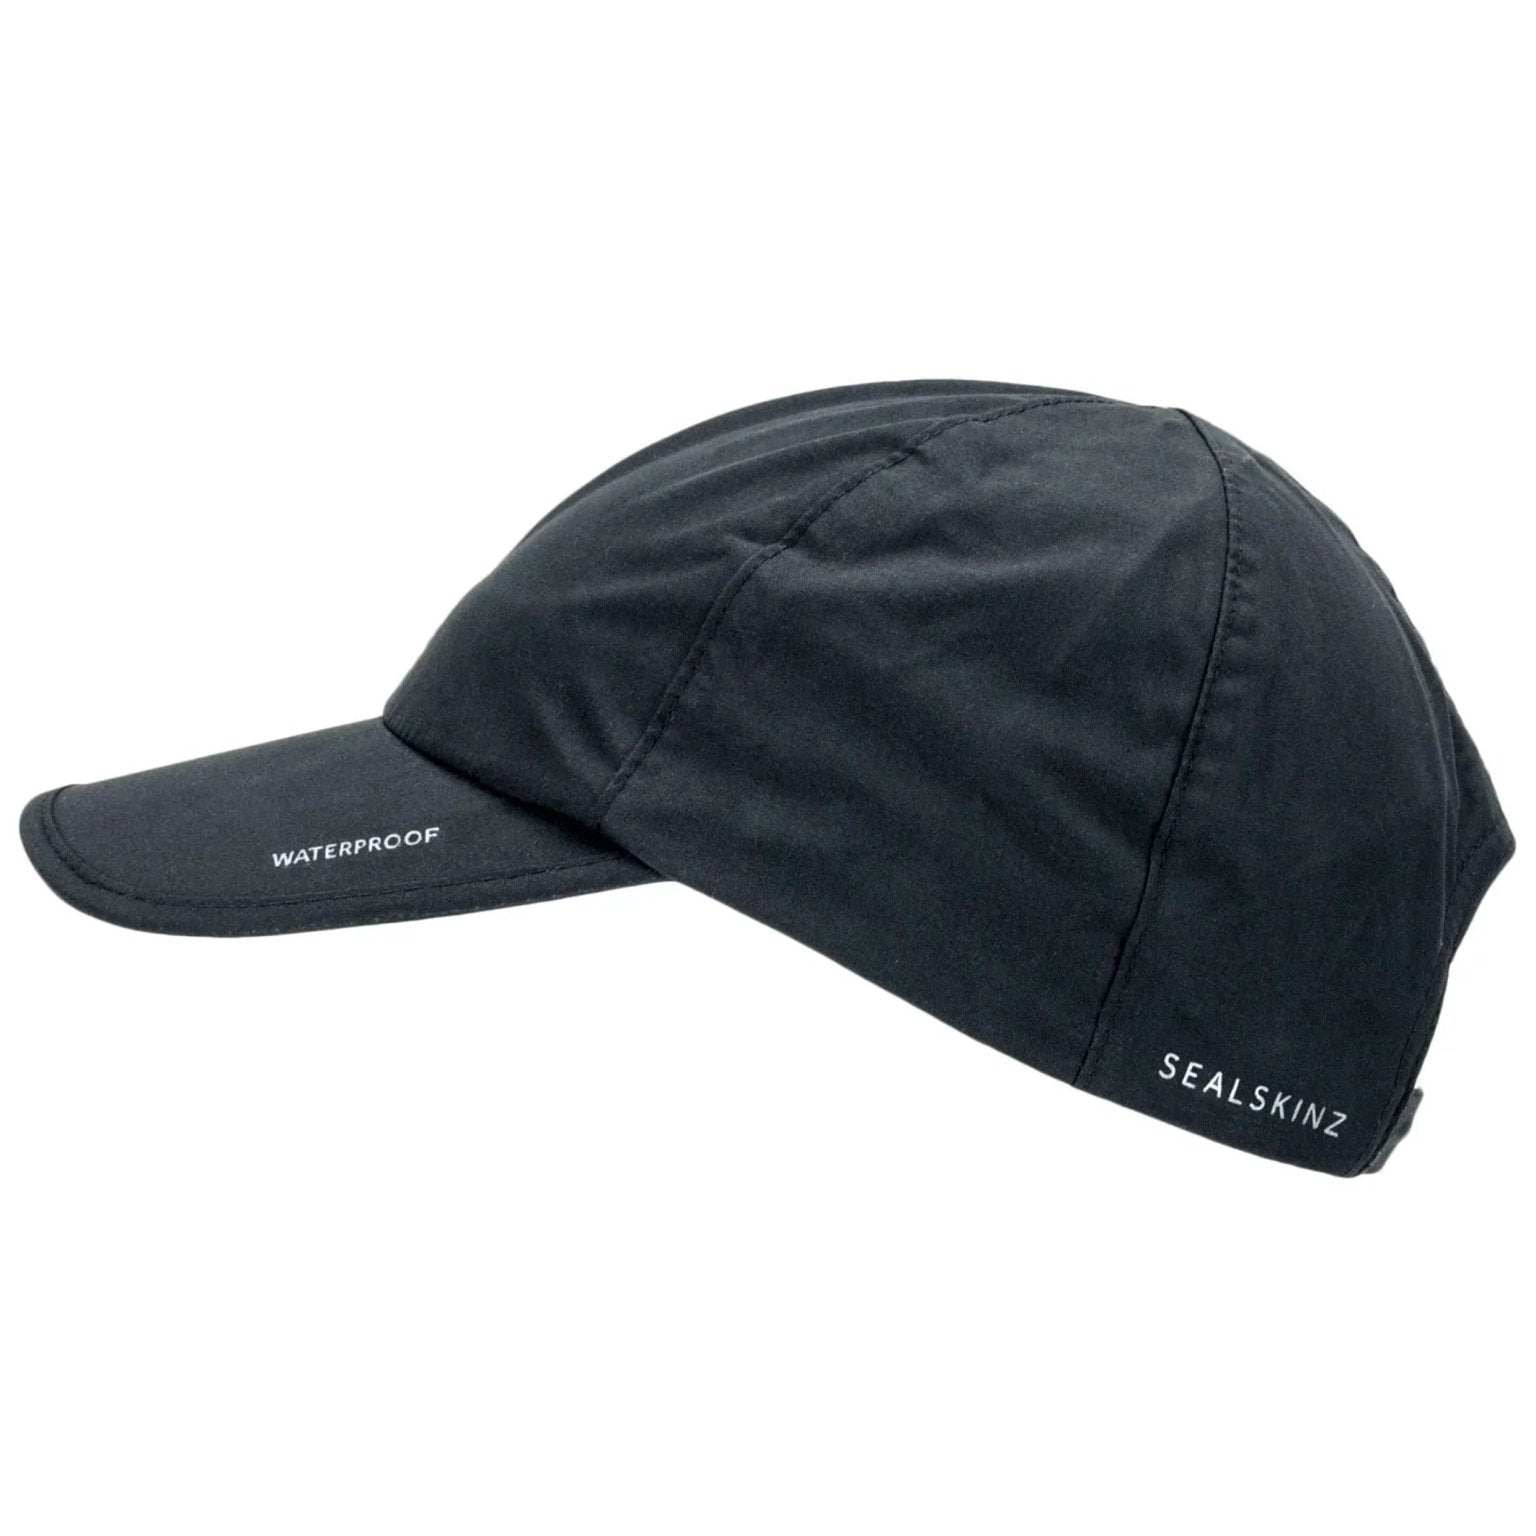 4elementsclothingSealSkinzSealskinz - Waterproof Windproof Hat / Peaked Cap / Baseball cap - LanghamHats5055754430400